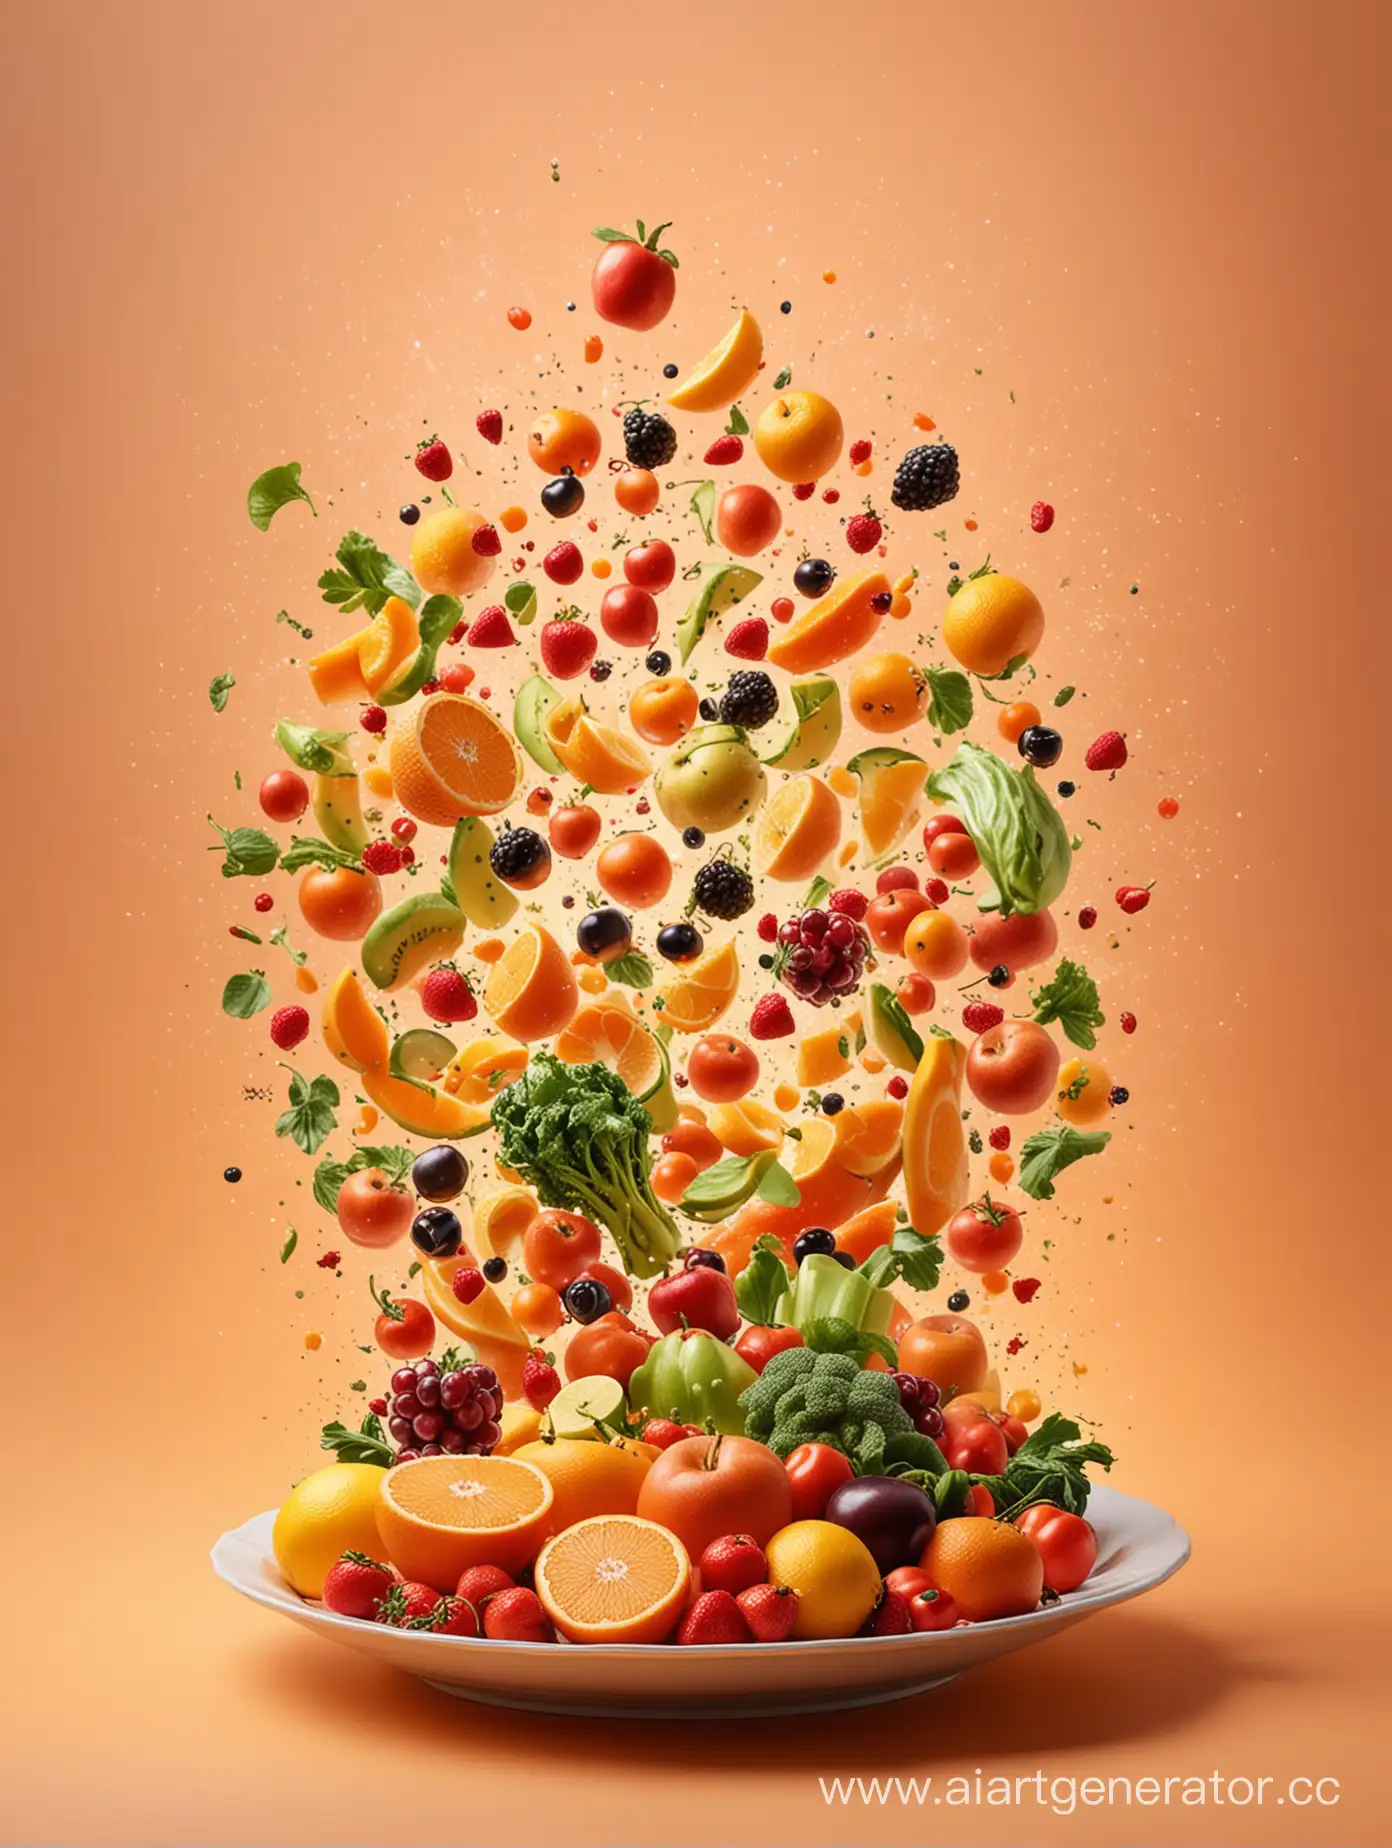 композиция из овощей и фруктов падающая в тарелку на оранжевом фоне градиент